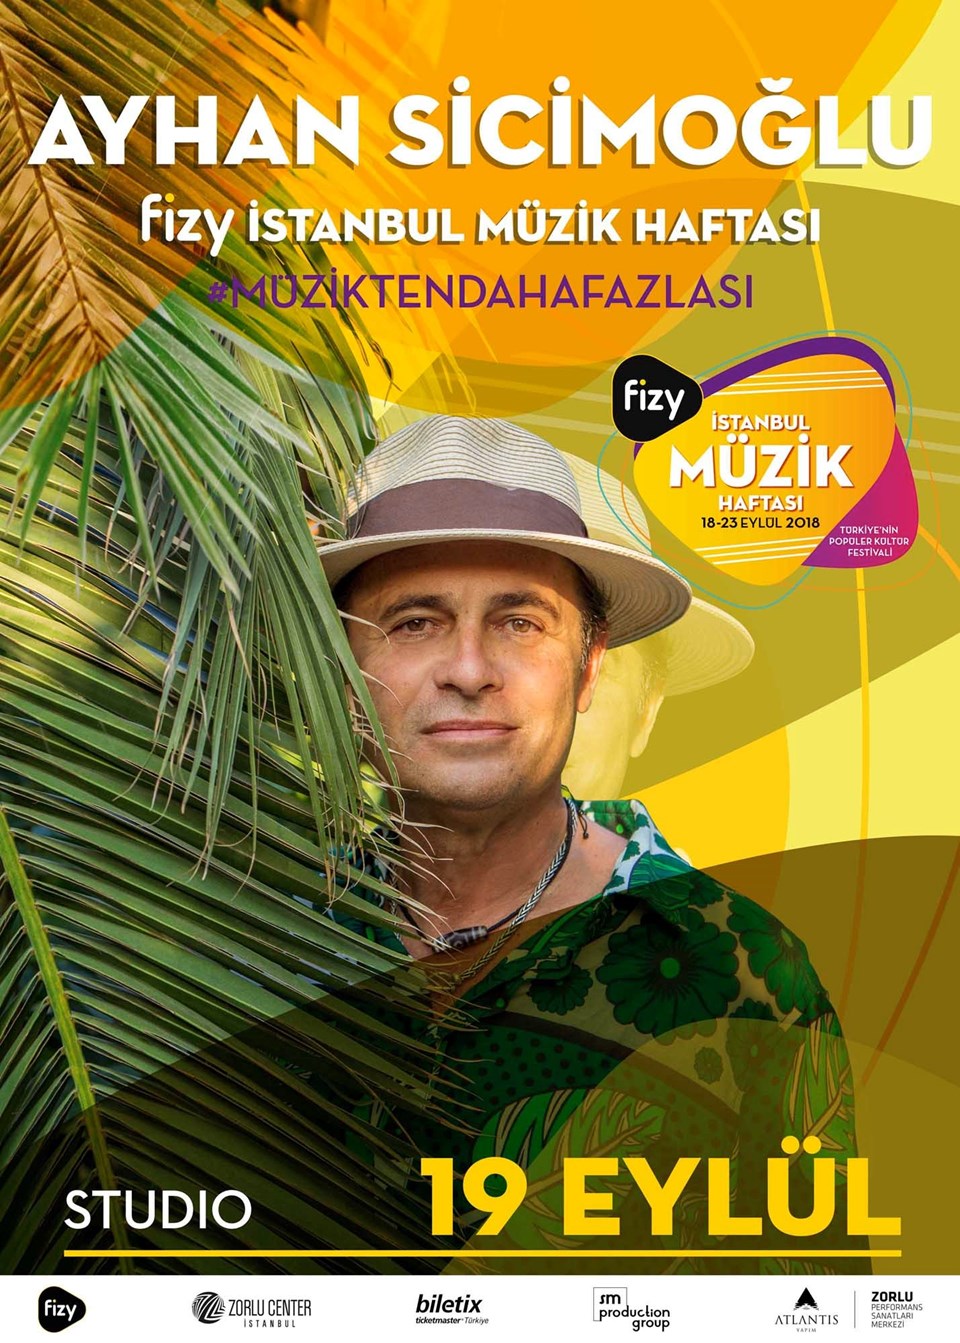 Fizy İstanbul Müzik Haftası başlıyor - 1